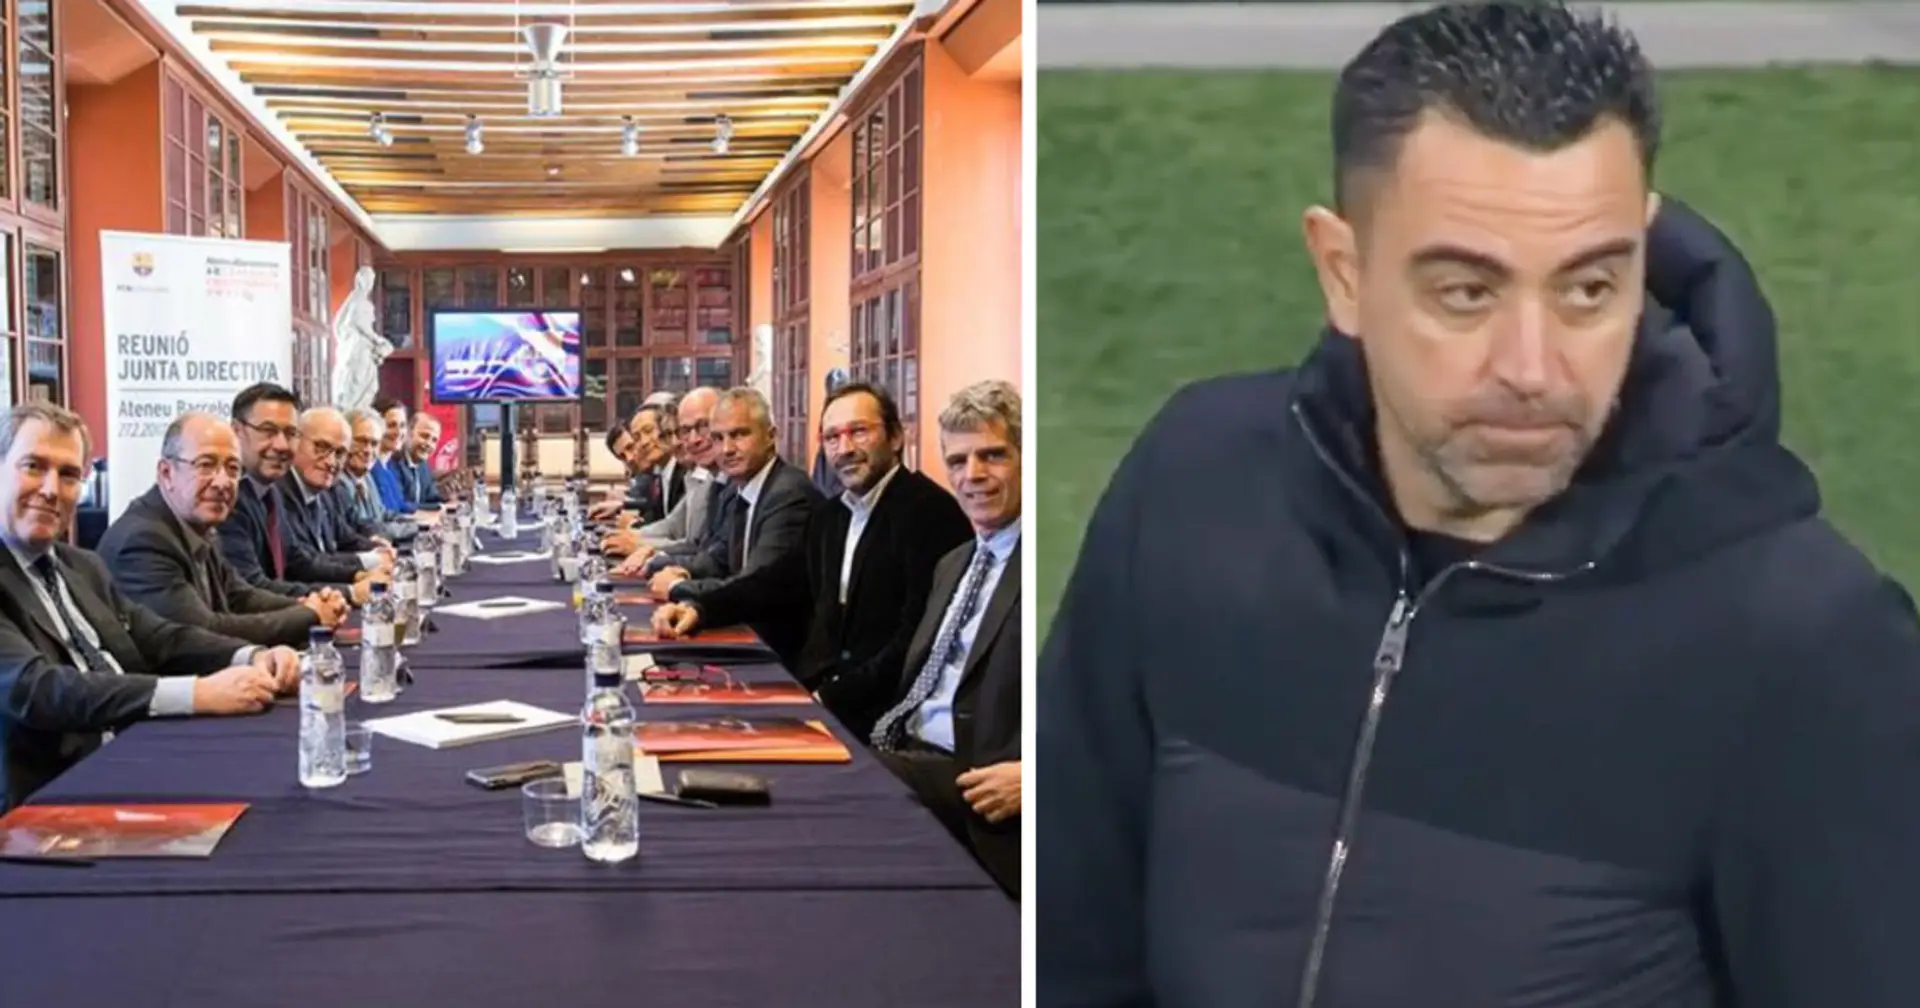 Certains membres du conseil d'administration du Barça veulent le départ de Xavi, la raison dévoilée